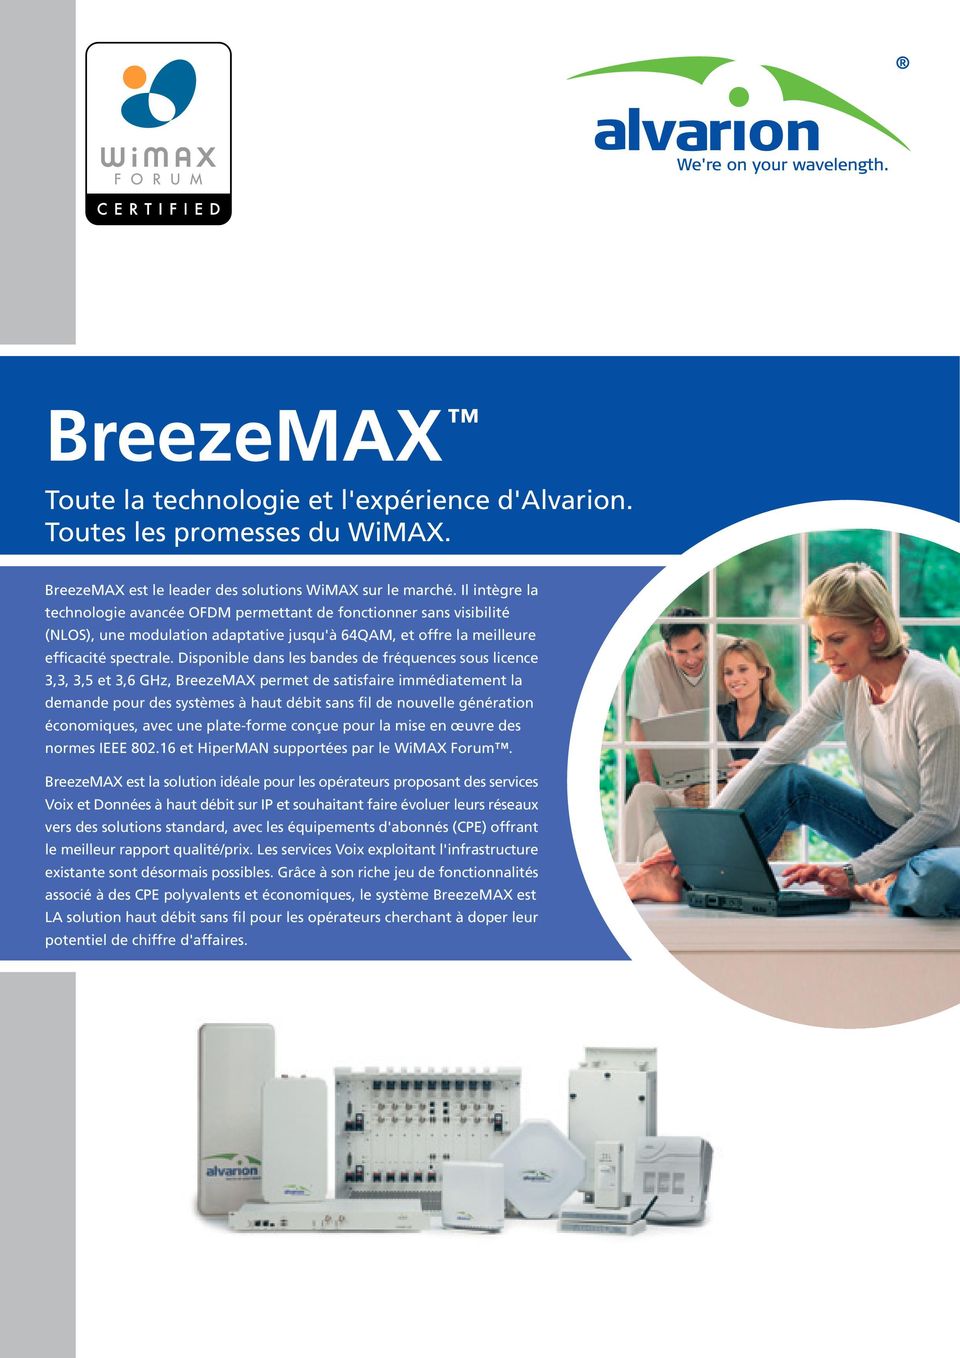 Disponible dans les bandes de fréquences sous licence 3,3, 3,5 et 3,6 GHz, BreezeMAX permet de satisfaire immédiatement la demande pour des systèmes à haut débit sans fil de nouvelle génération